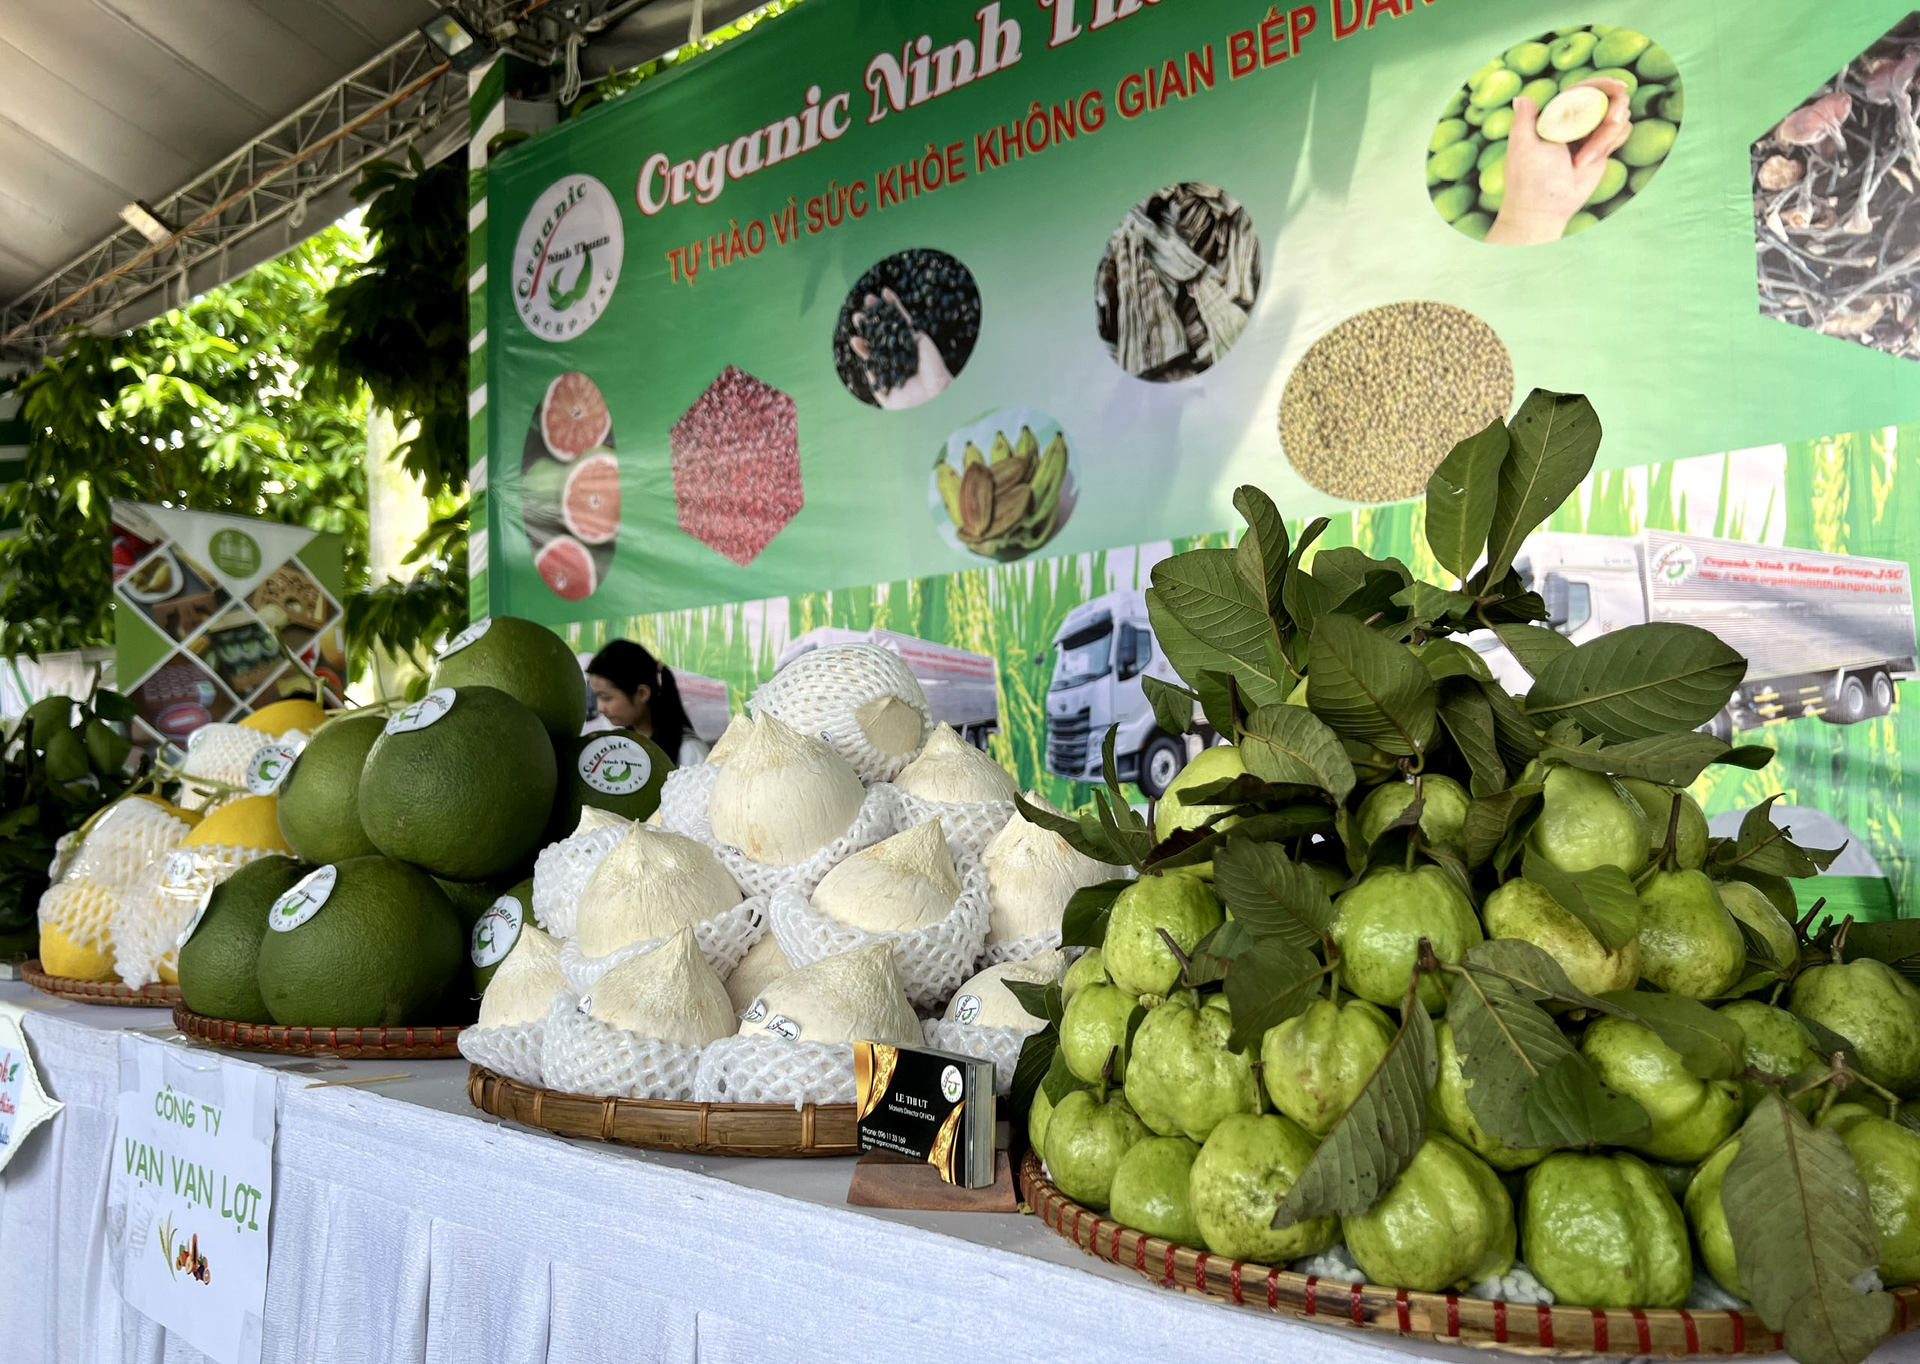 Organic Ninh Thuận sẽ phát triển nhiều loại nông sản hữu cơ ở Ninh Thuận, trong đó có các loại trái cây. Ảnh: Sơn Trang.